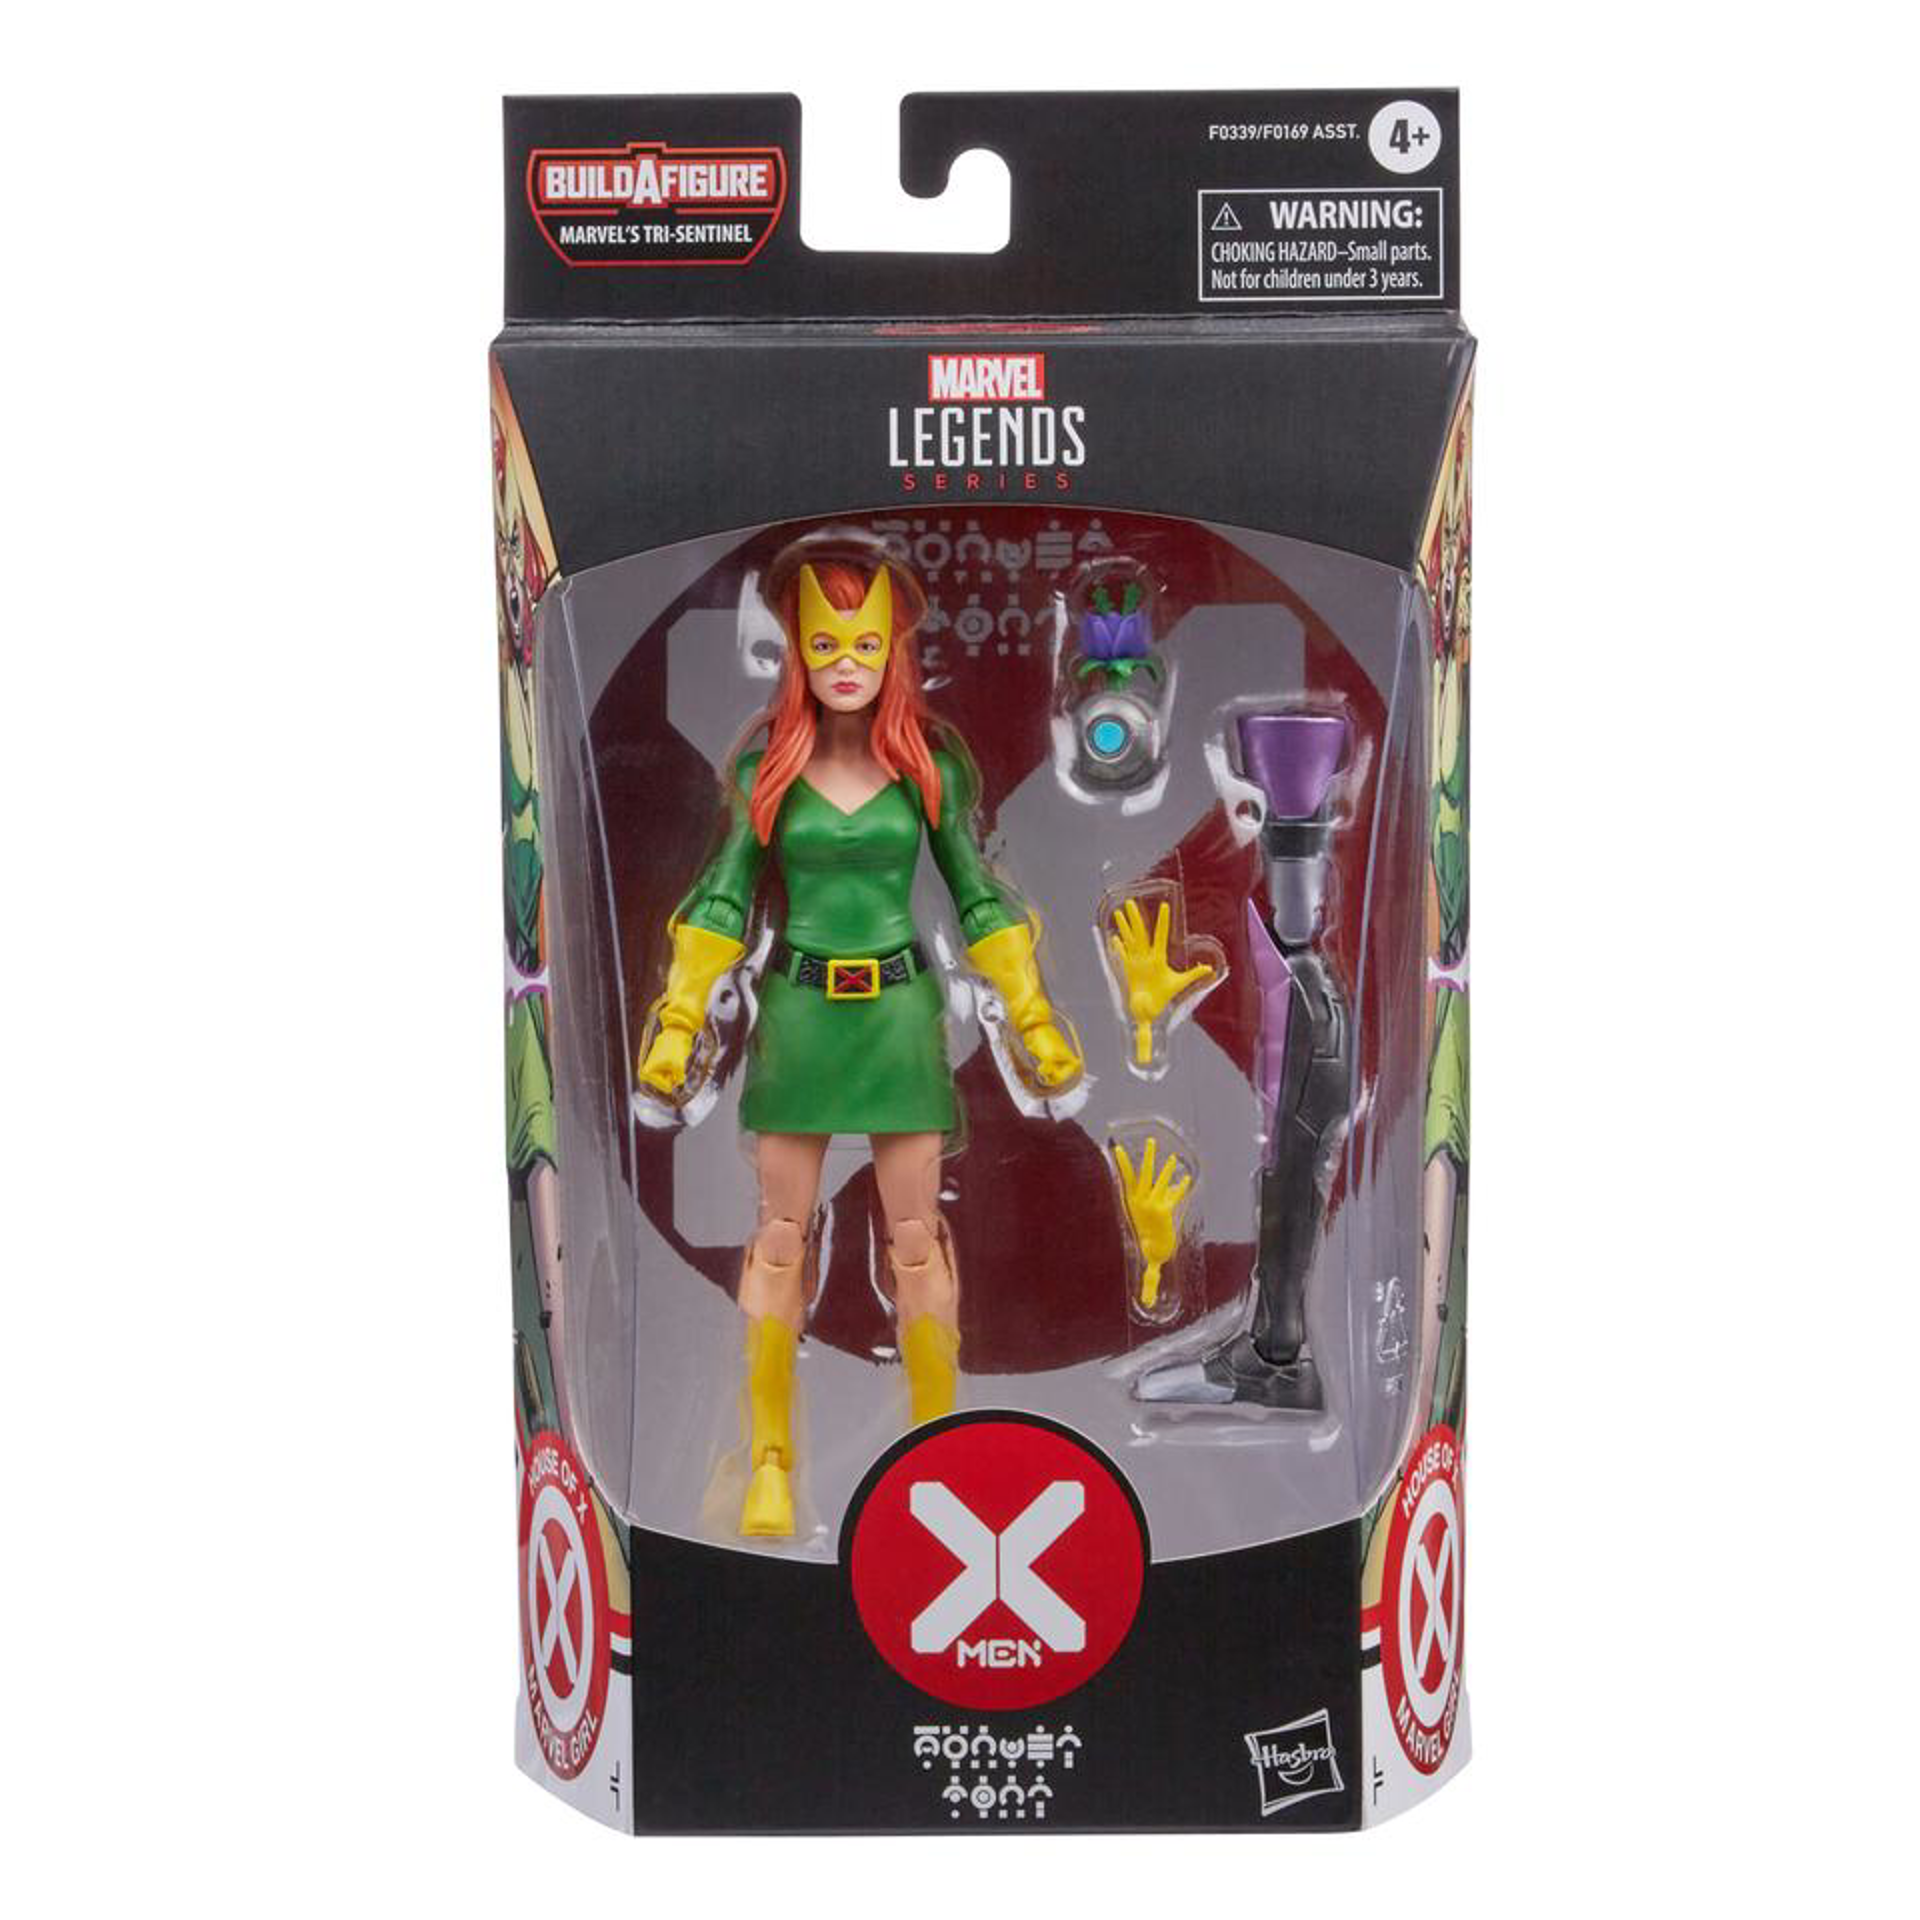 Marvel Legends Series - Build-A-Figure Série Marvel's Tri-Sentinel - X-Men House of X Figurine d'action de Jean Grey 15cm